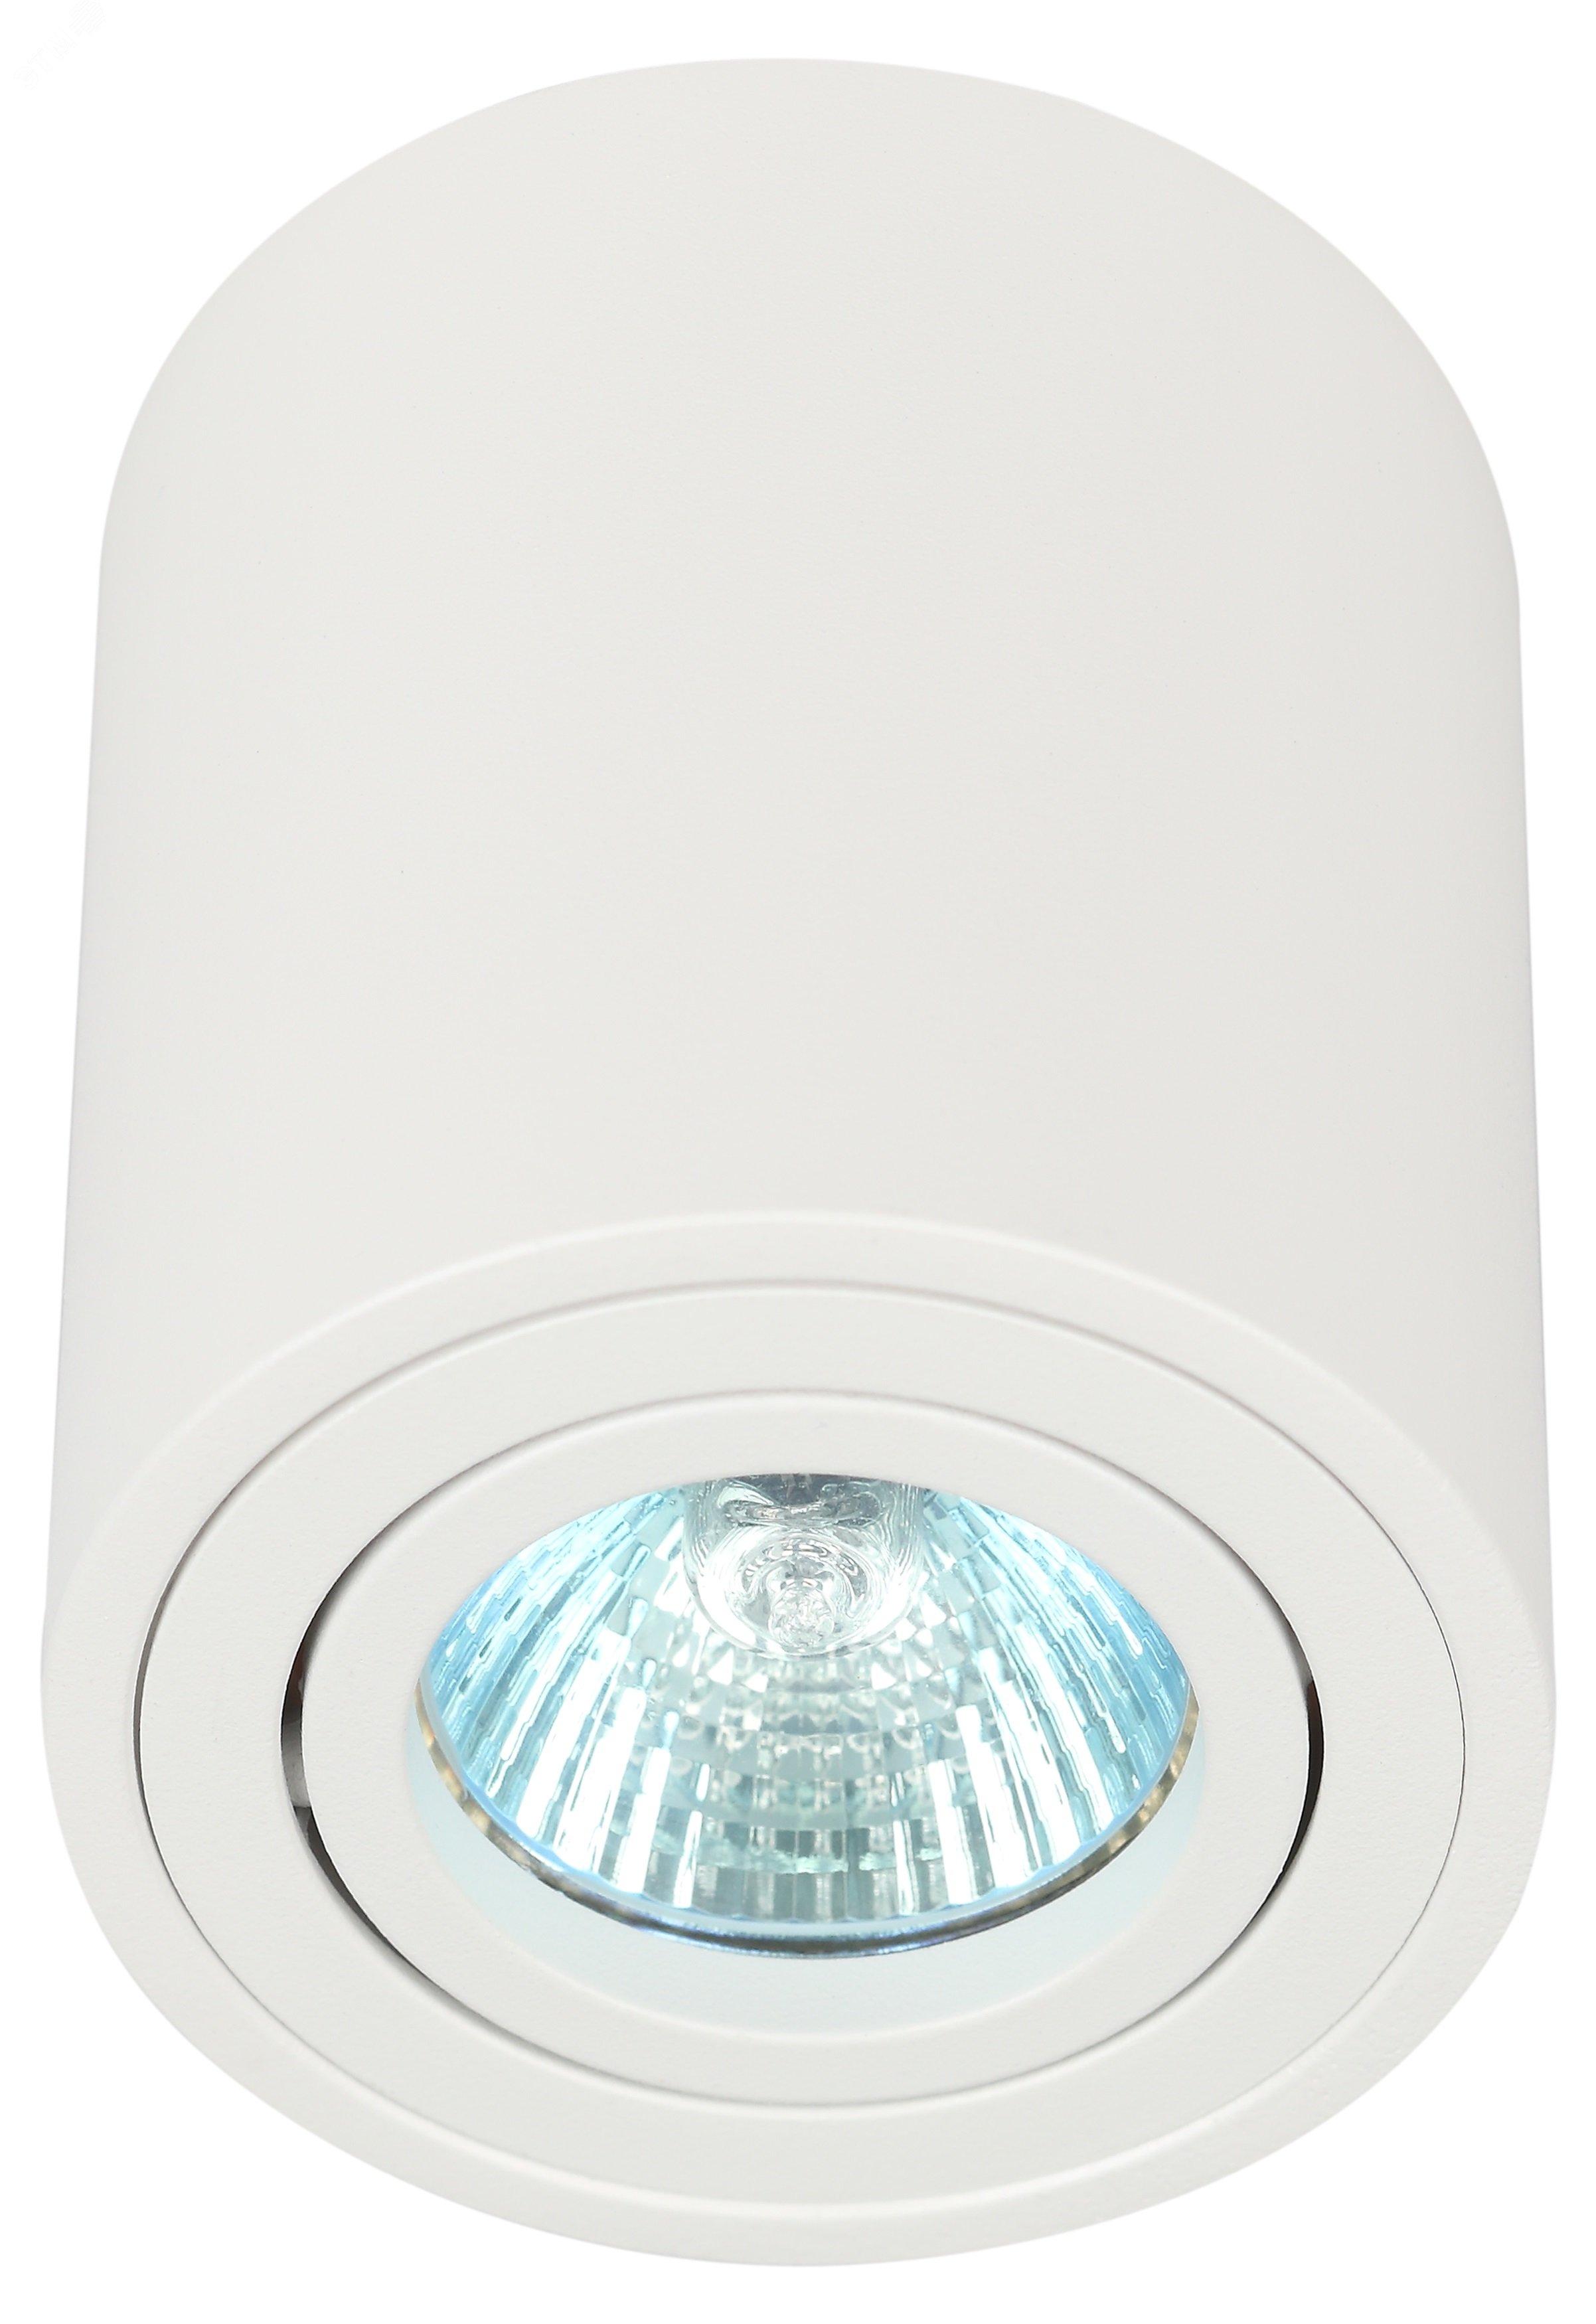 Светильник настенно-потолочный спот OL21 WH MR16/GU10, белый, поворотный лампа MR16 ( в комплект не входит) Б0054392 ЭРА